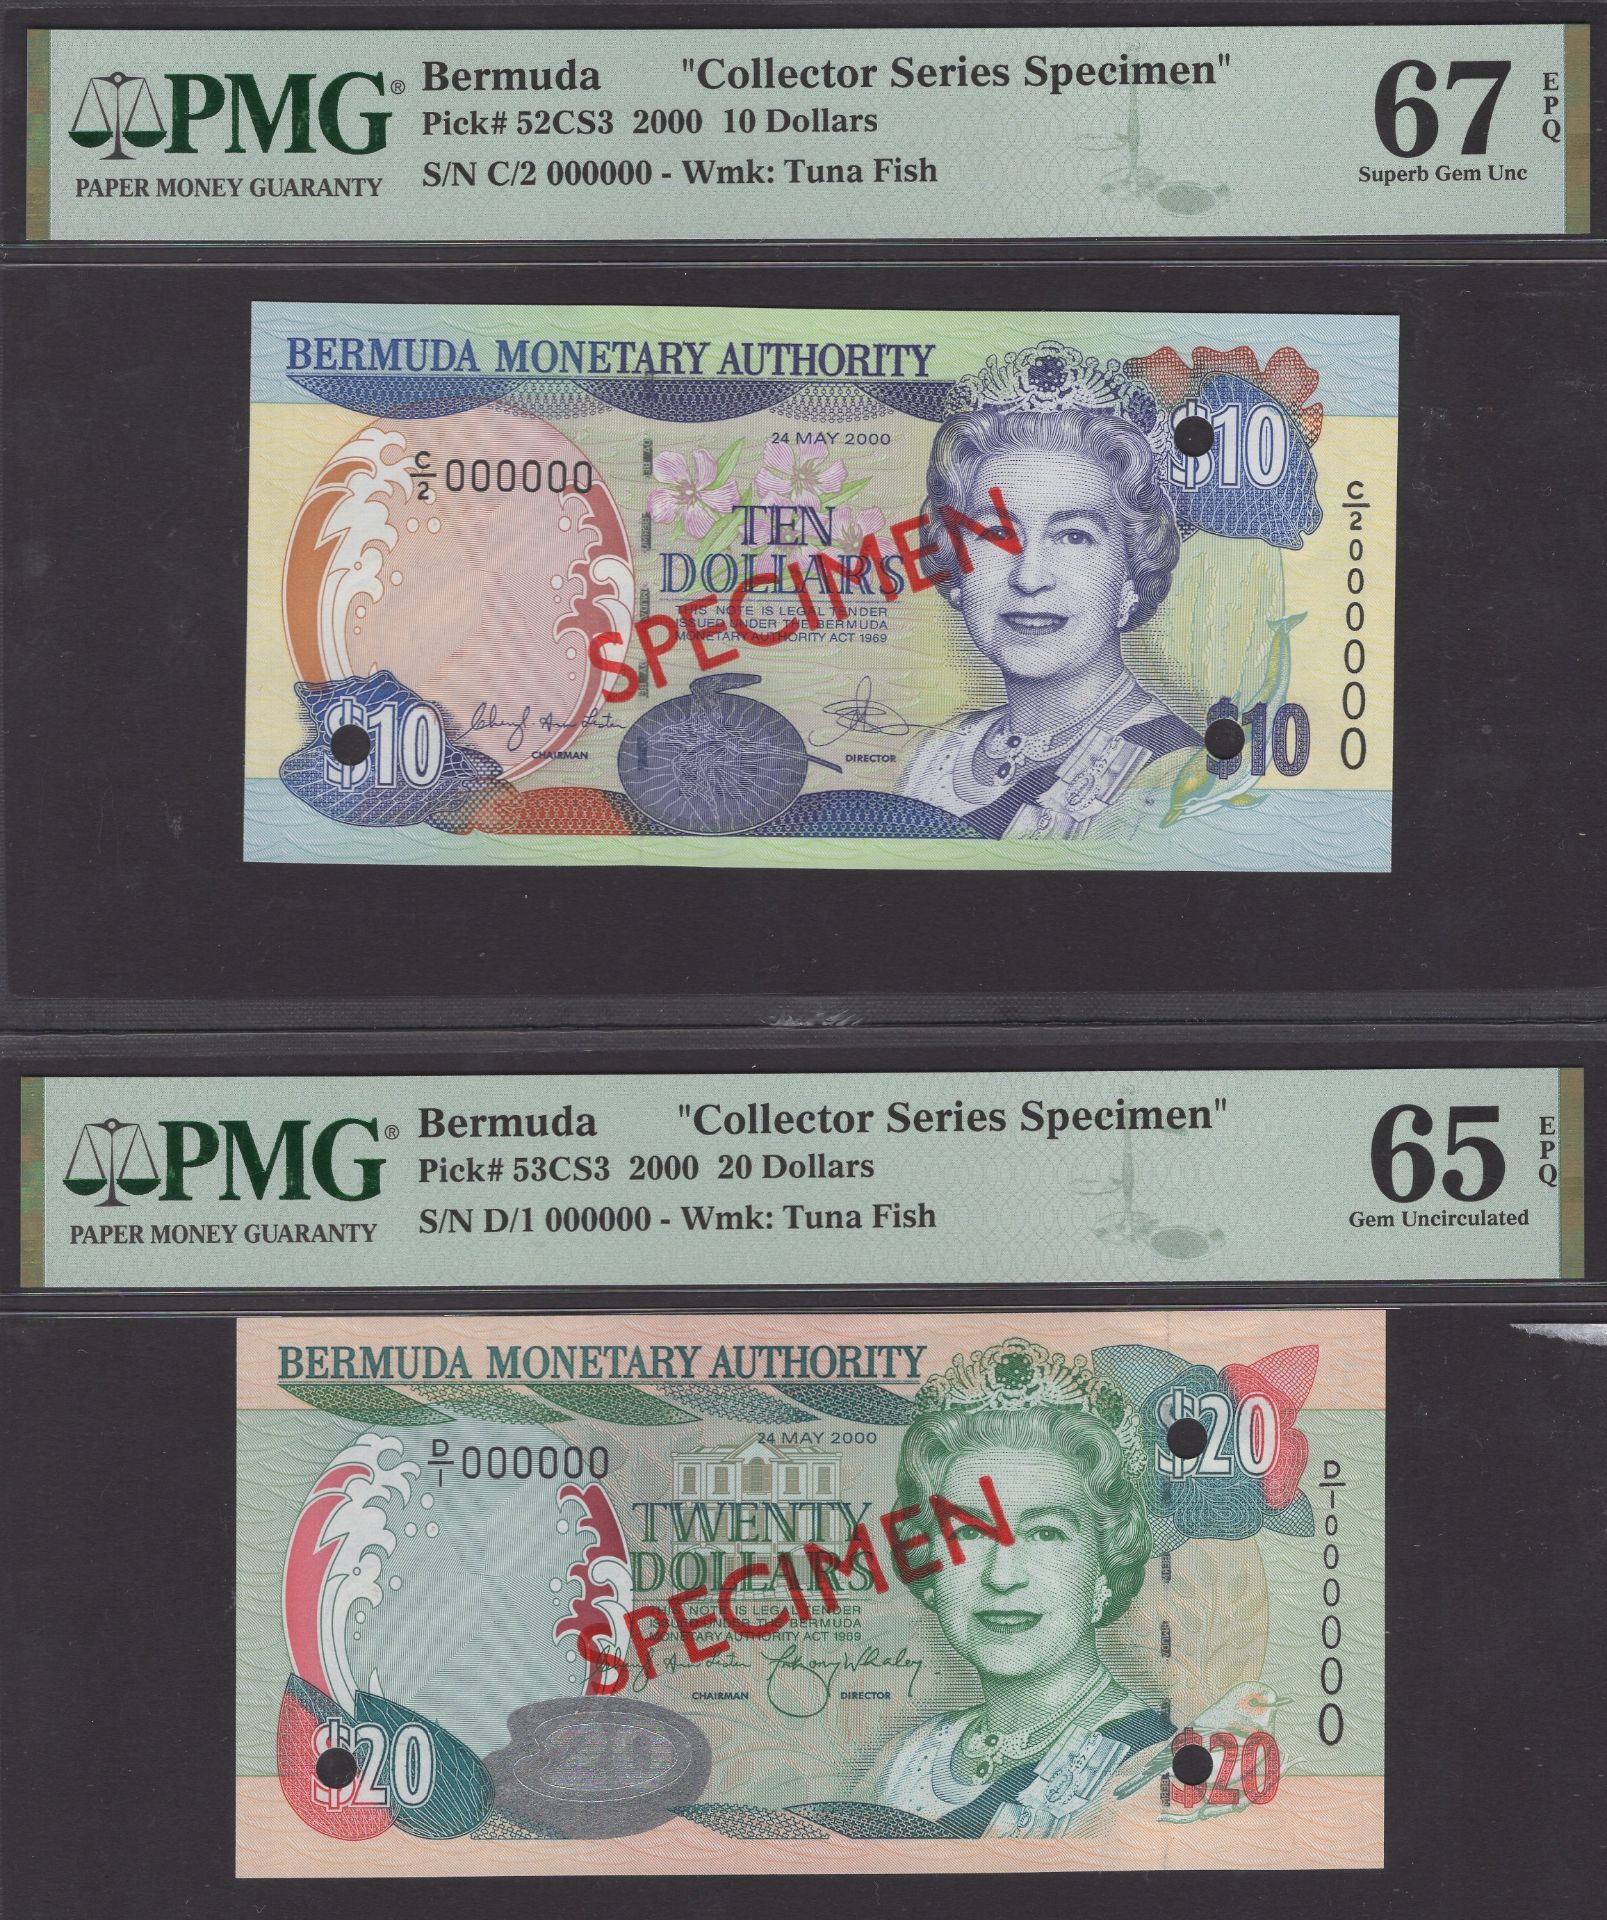 Bermuda Monetary Authority, collectors series specimen set $2, $5, $10, $20, $50, $100, 24 M... - Image 2 of 3